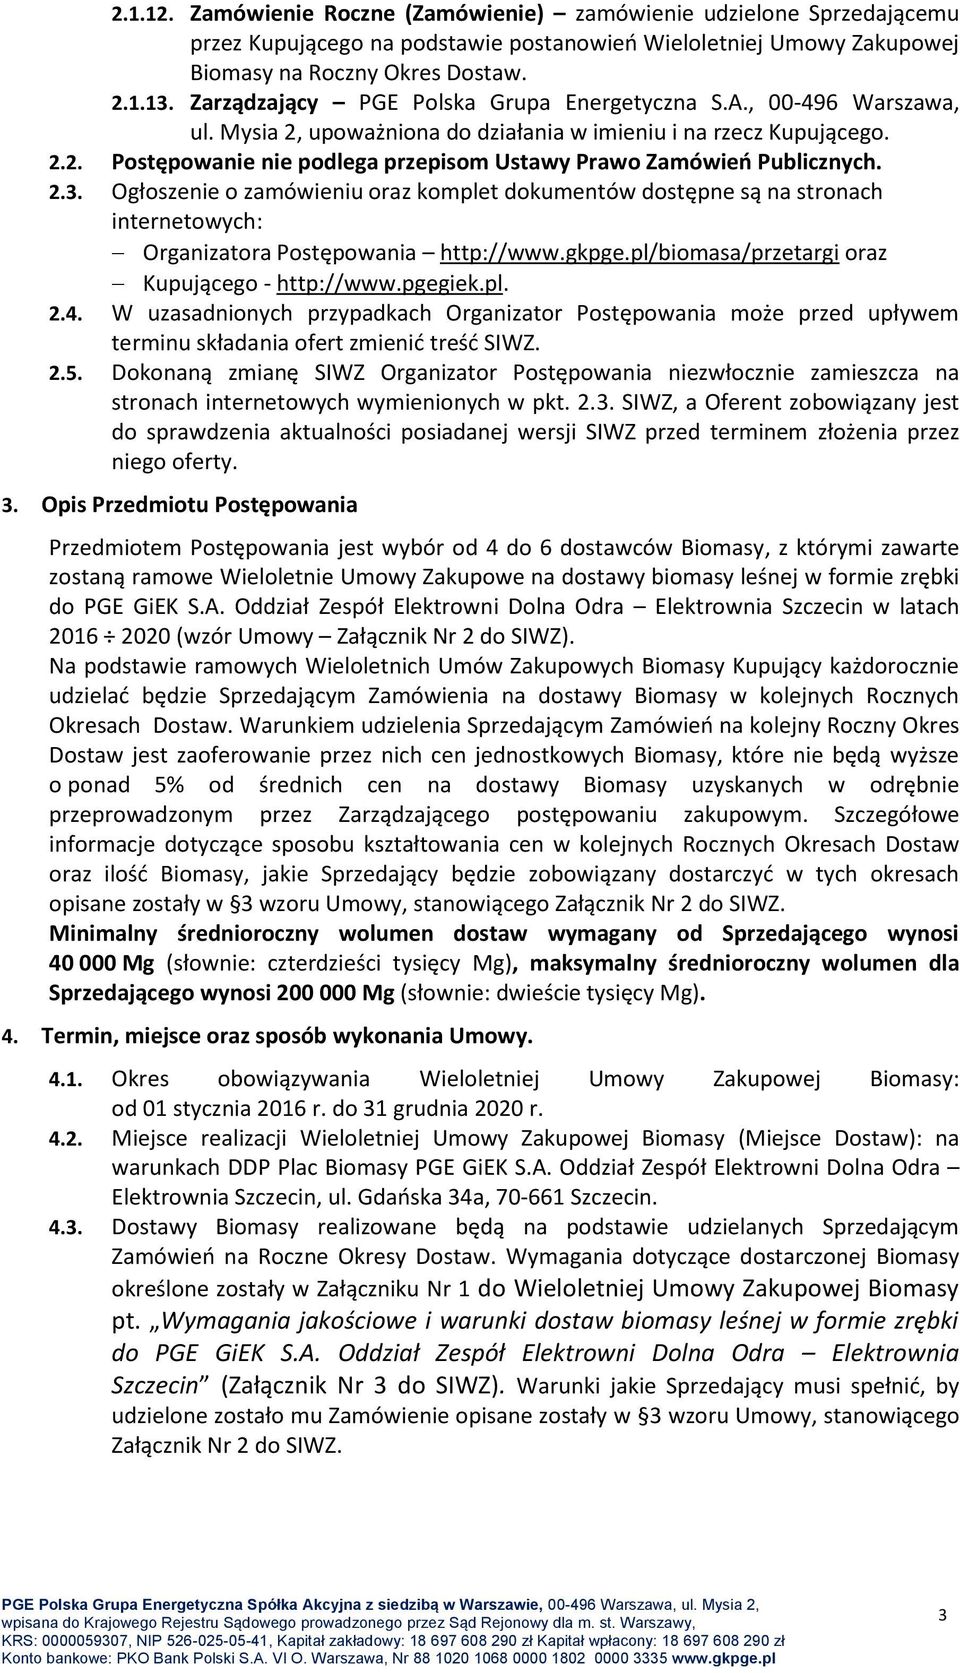 2.3. Ogłoszenie o zamówieniu oraz komplet dokumentów dostępne są na stronach internetowych: Organizatora Postępowania http://www.gkpge.pl/biomasa/przetargi oraz Kupującego - http://www.pgegiek.pl. 2.